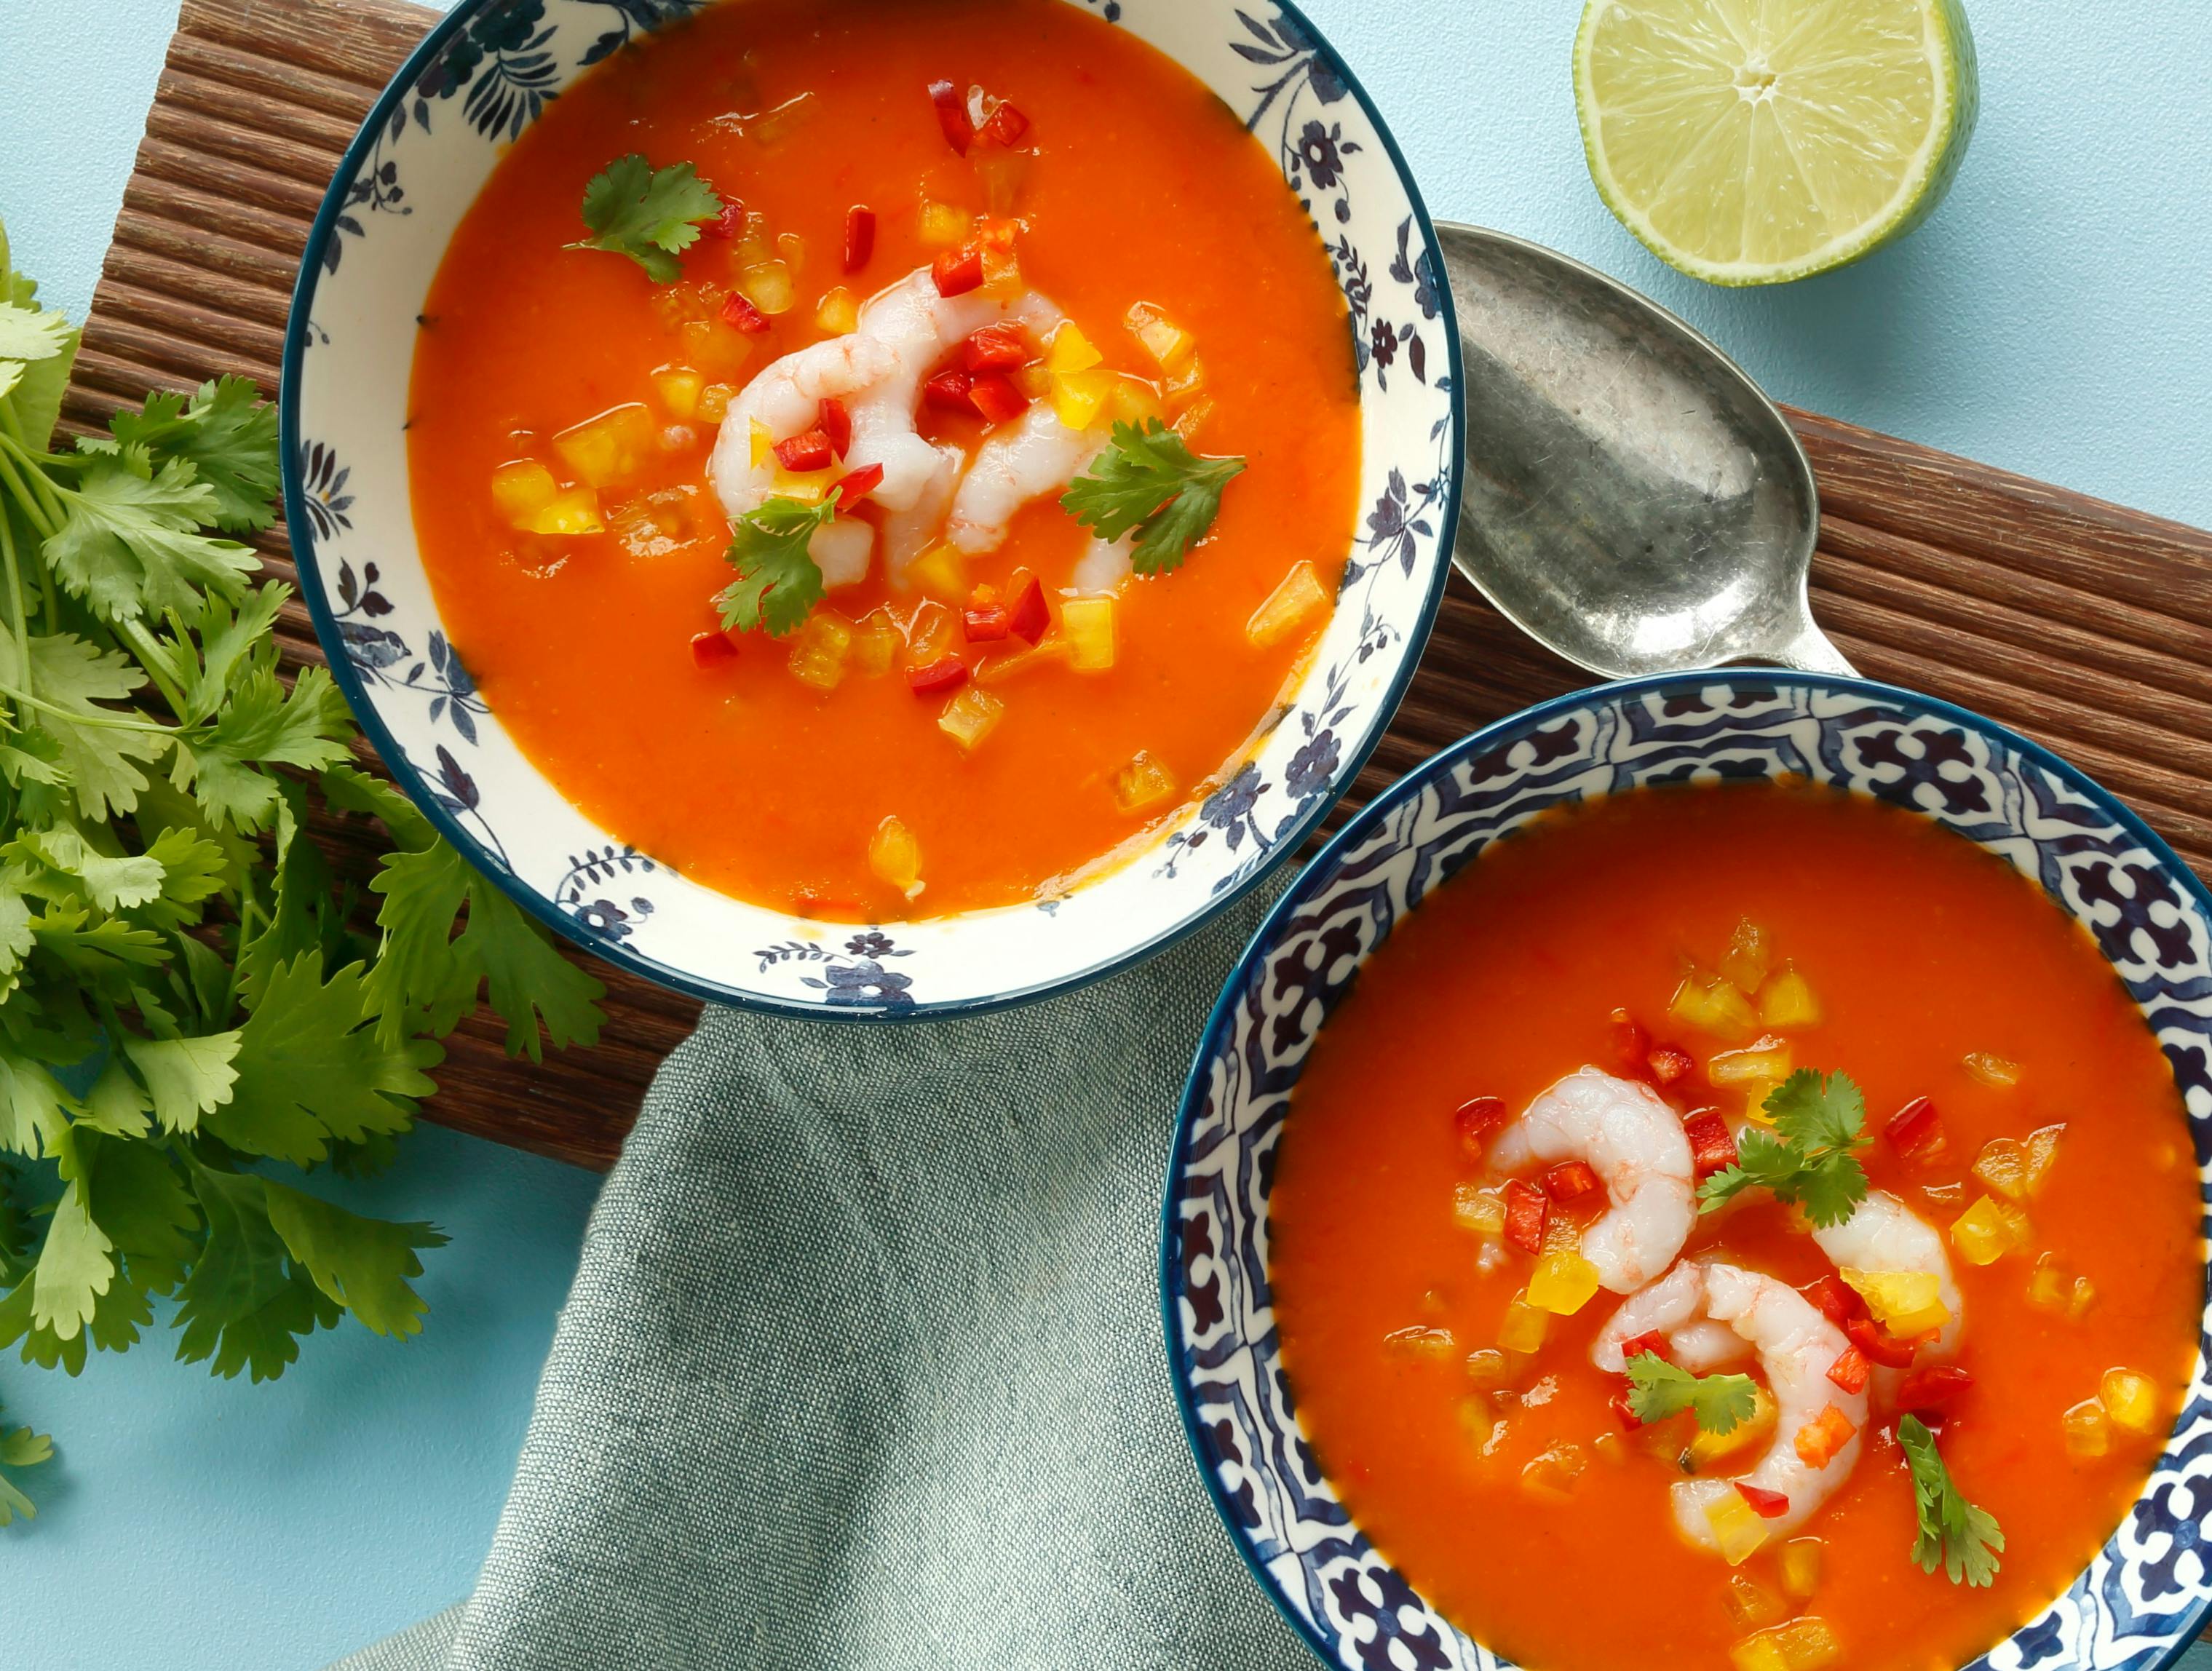 En smagfuld rød suppe med peberfrugt og rejer, der er skøn som hverdagsmad.